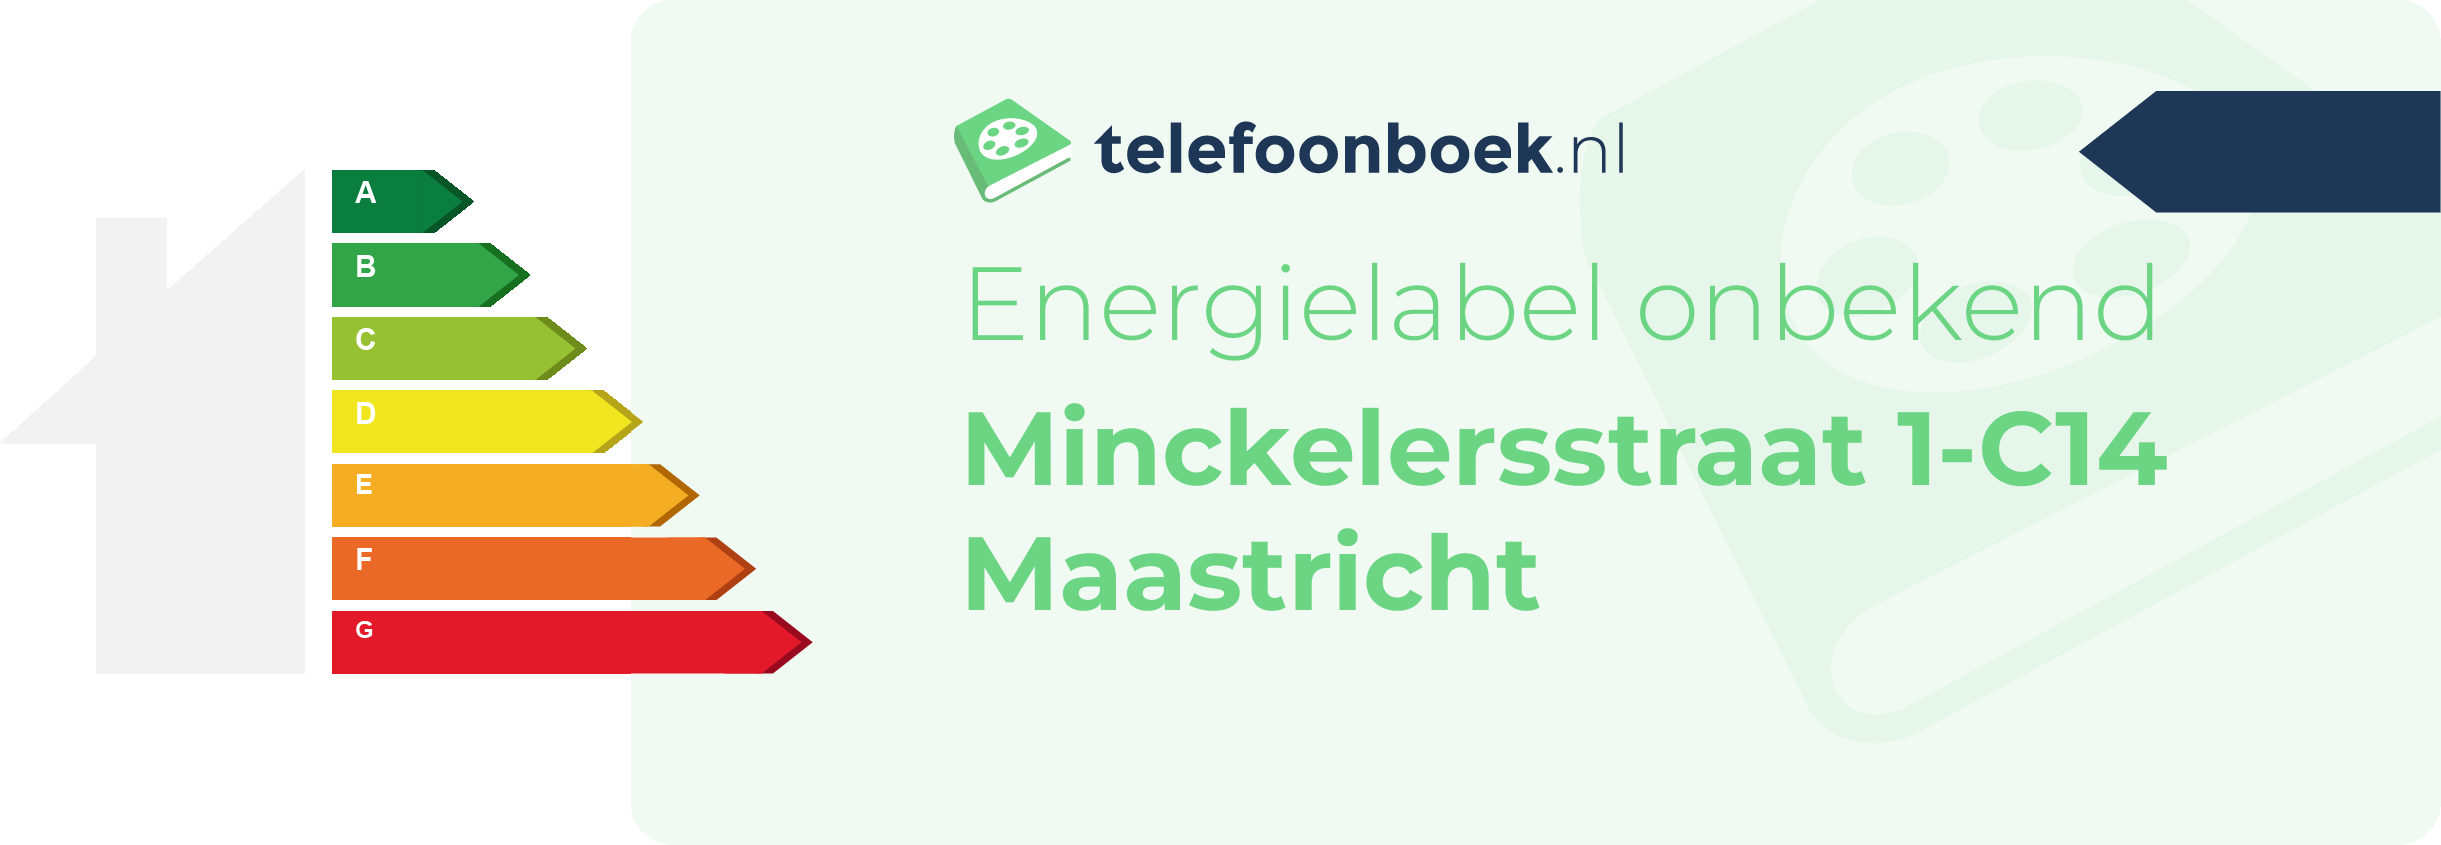 Energielabel Minckelersstraat 1-C14 Maastricht